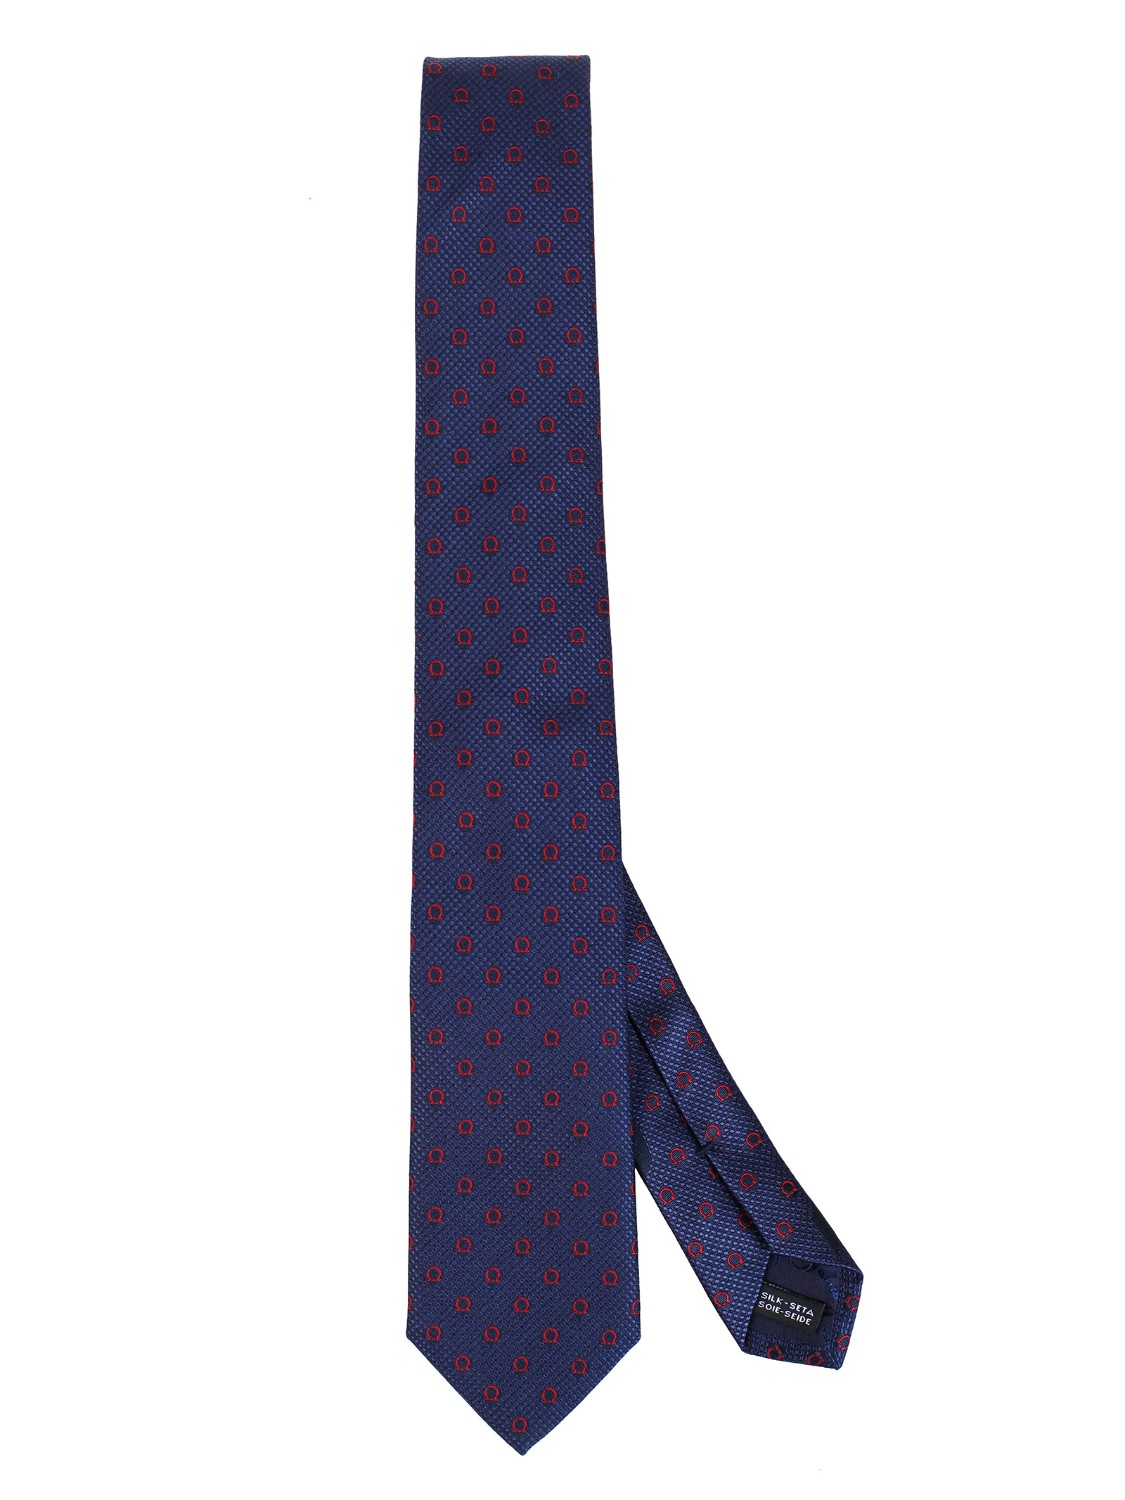 shop SALVATORE FERRAGAMO  Cravatta: Salvatore Ferragamo cravatta in seta con Gancini.
Composizione: 100% seta.
Made in Italy.. 357880 GIOIA-001 703112 number 8266713